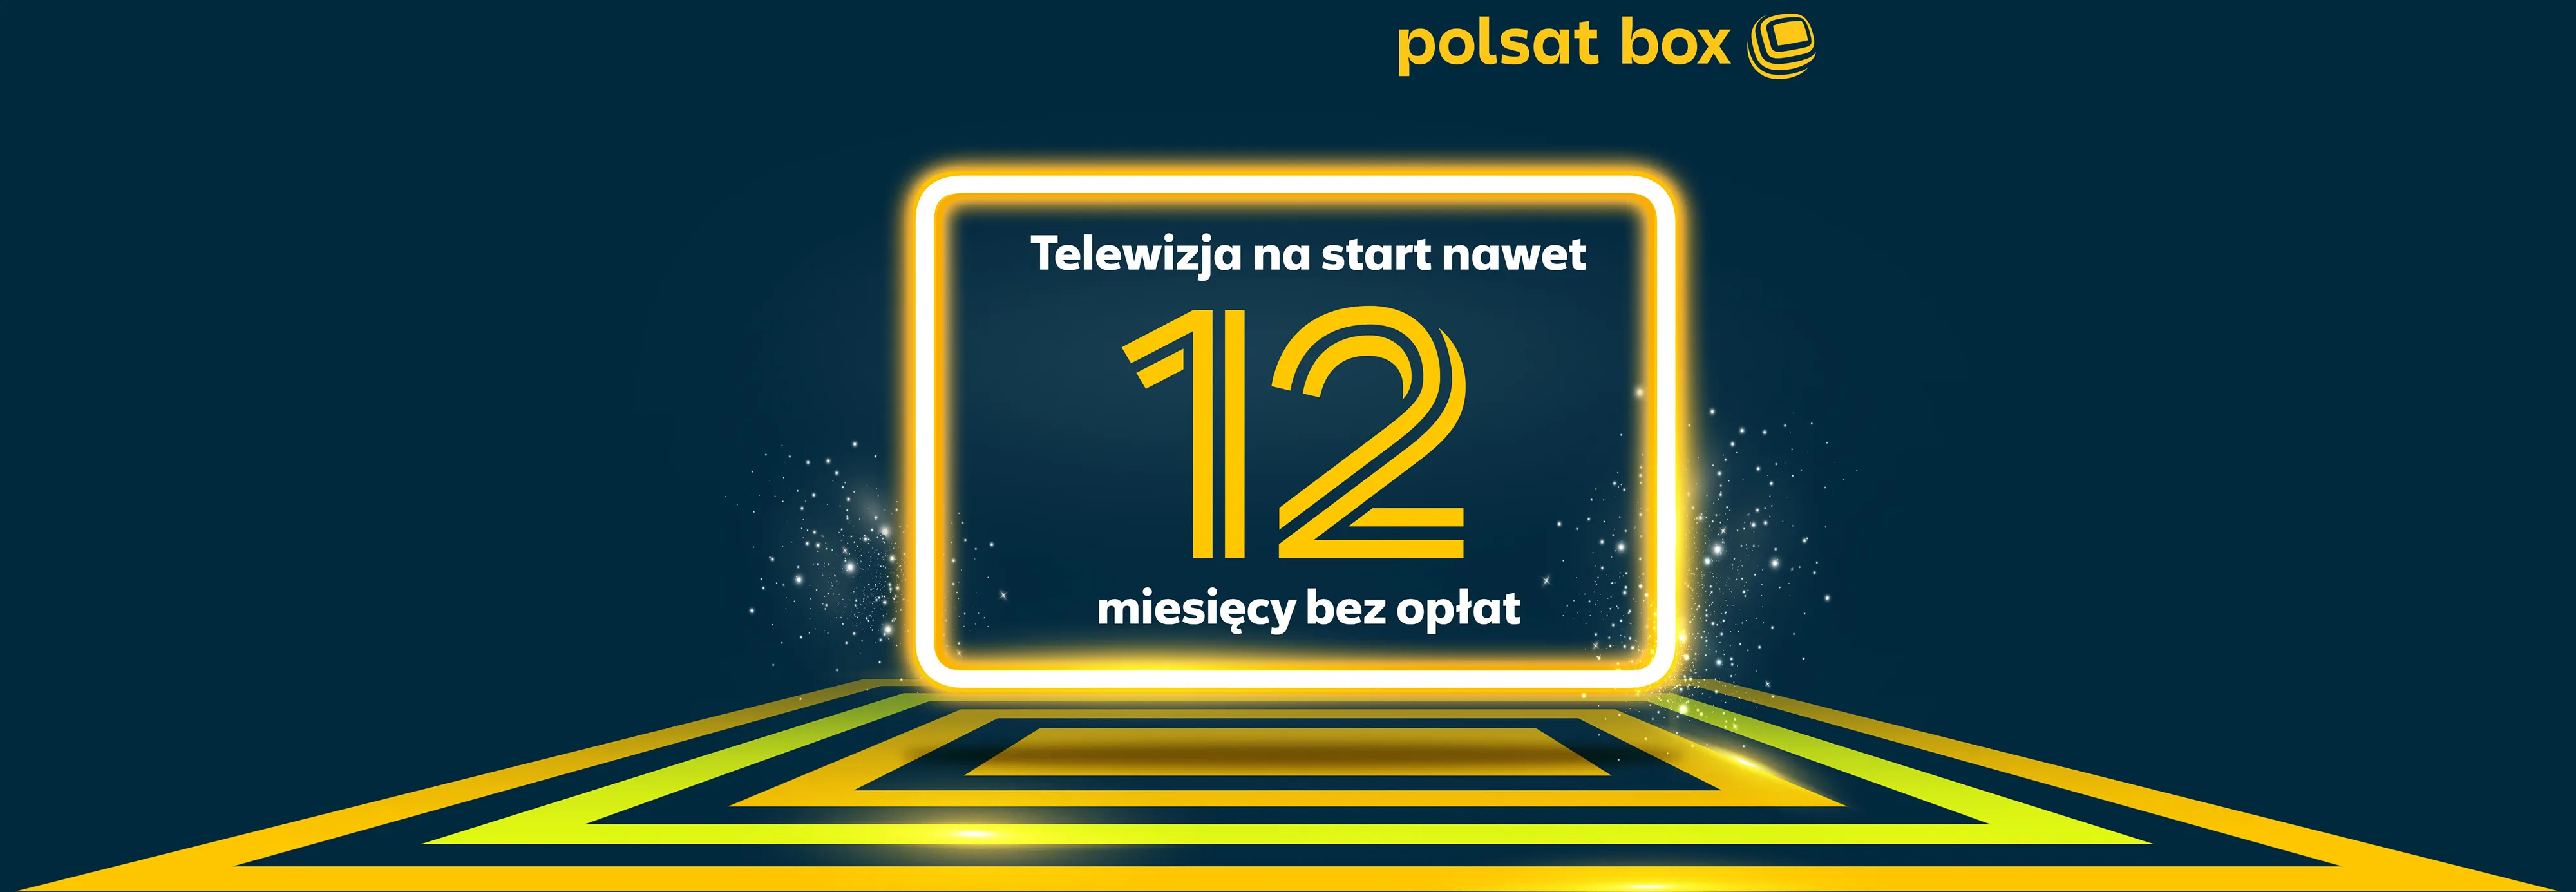 Polsat Box - Telewizja na start nawer 12 miesięcy bez opłat